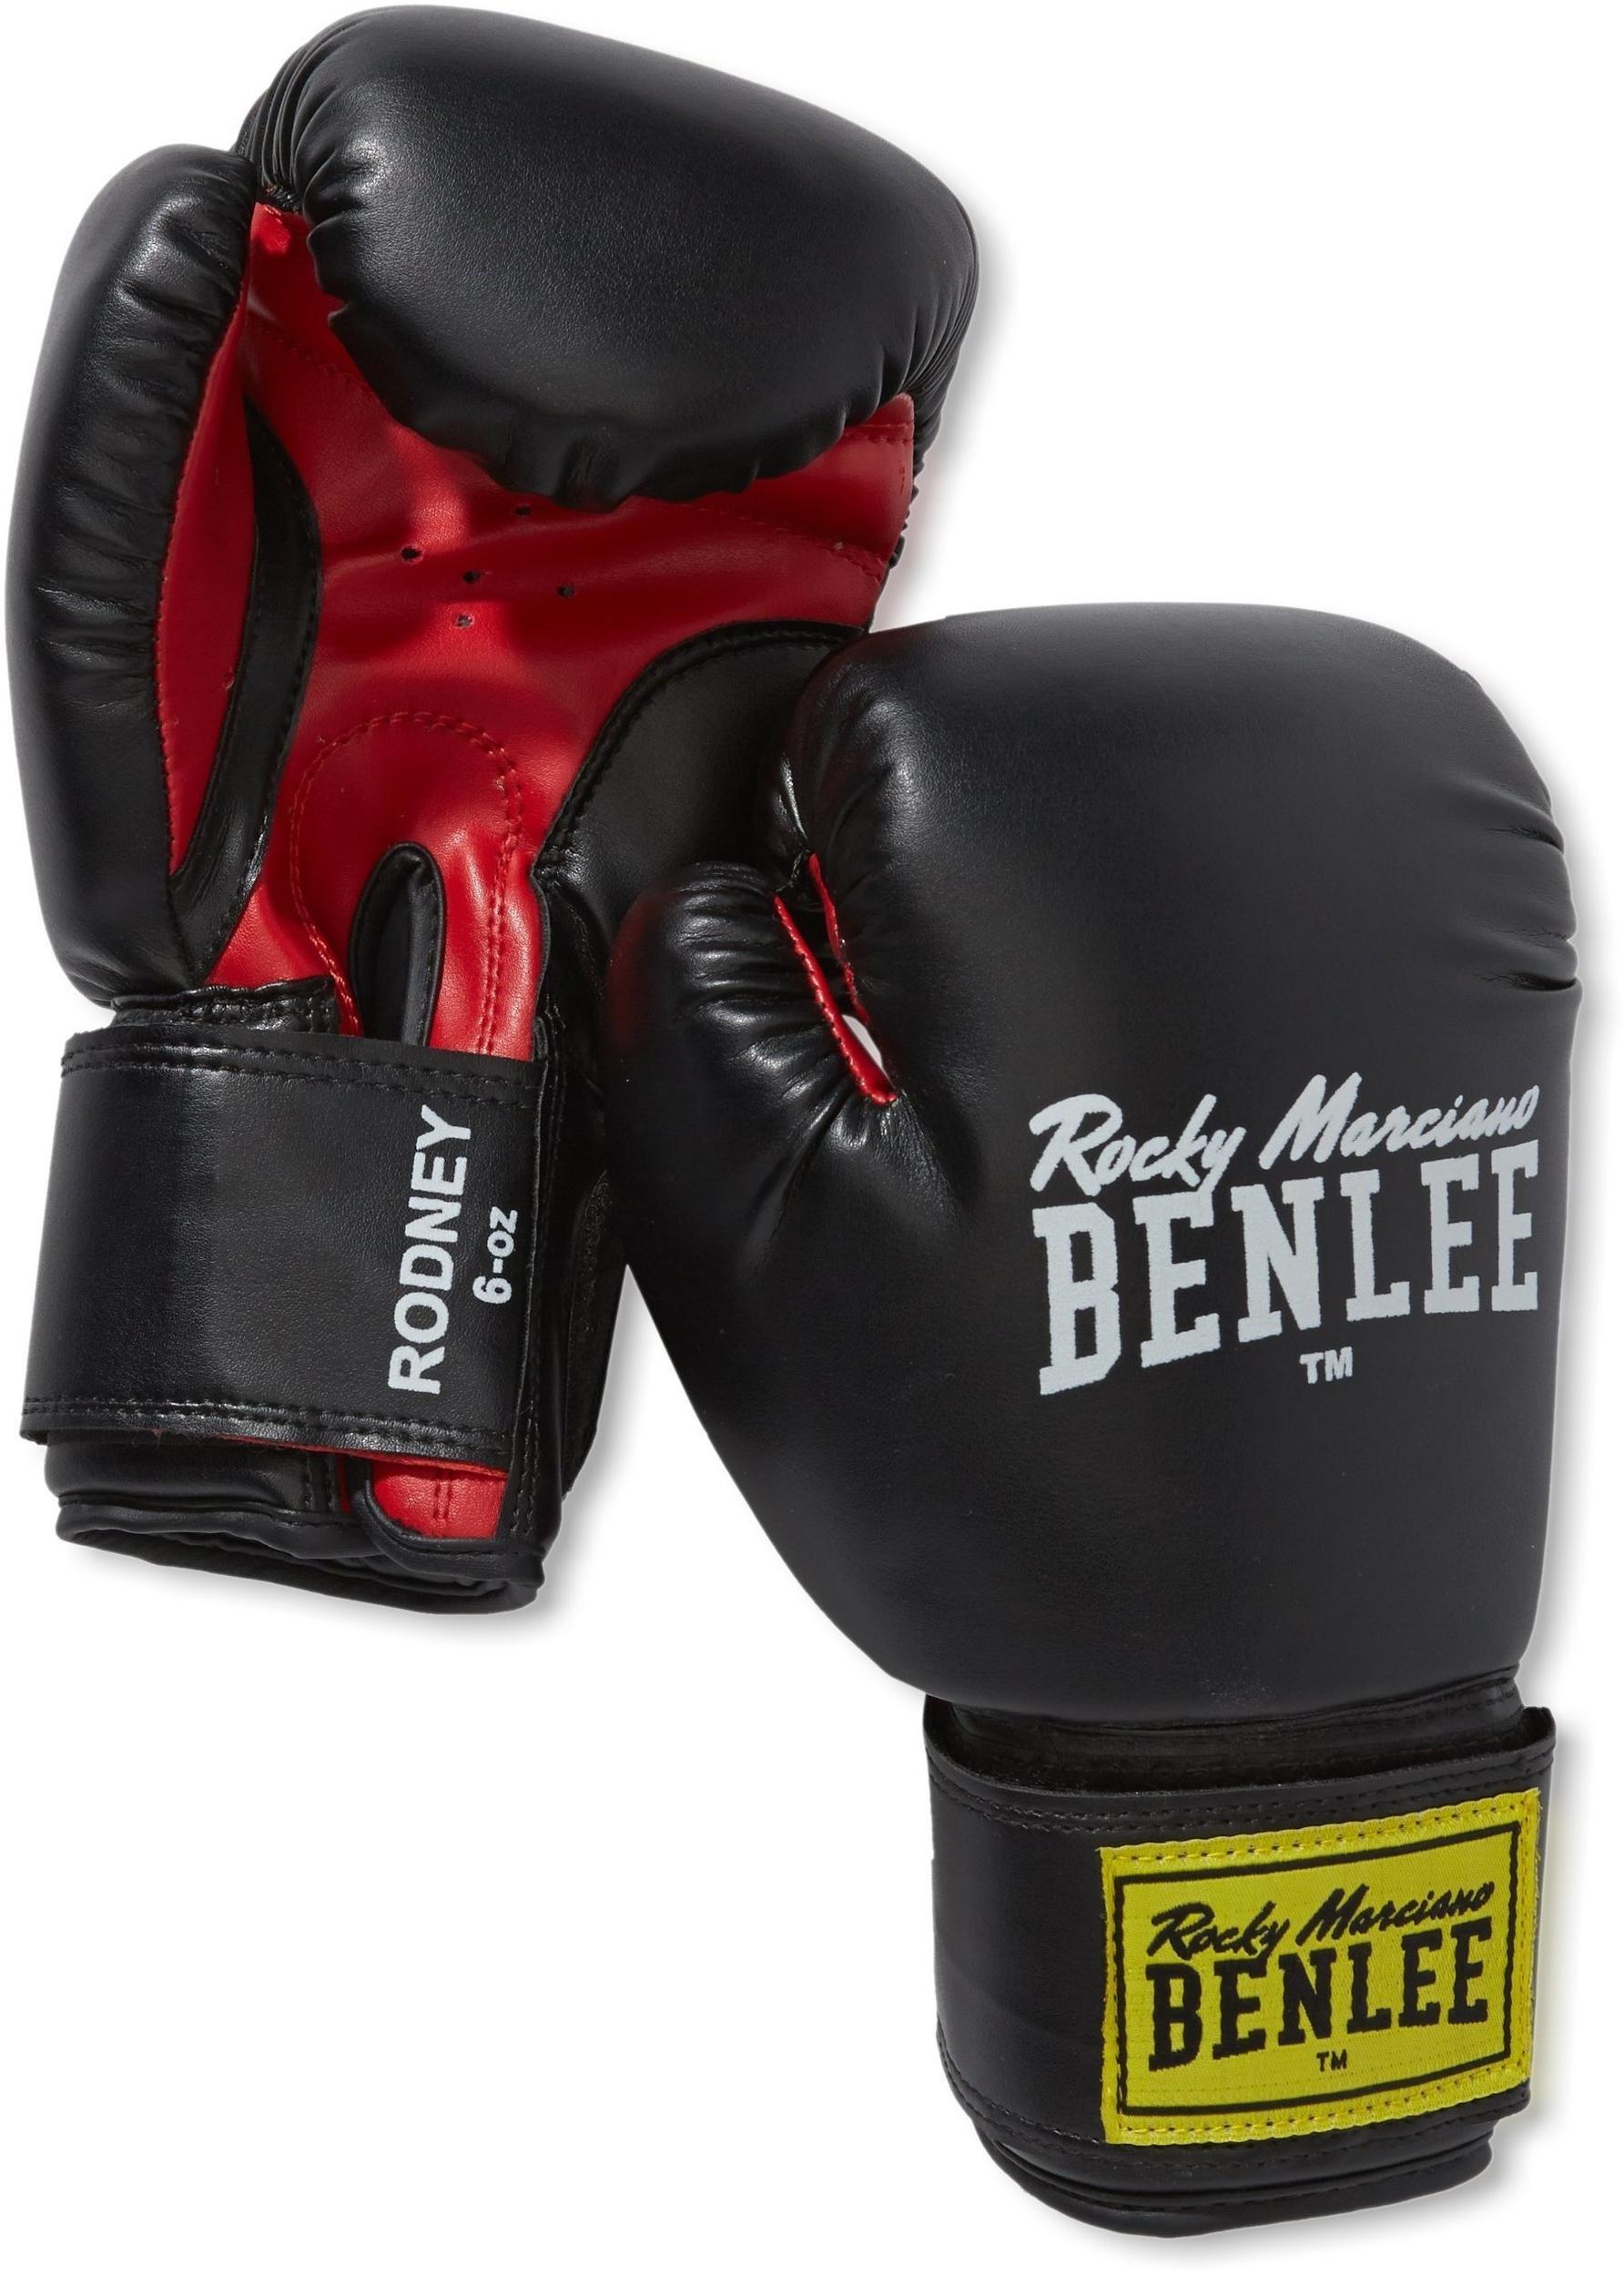 BENLEE Rocky Marciano Boxhandschuhe Rodney schwarz/rot 12 oz Erfahrungen  3.3/5 Sternen